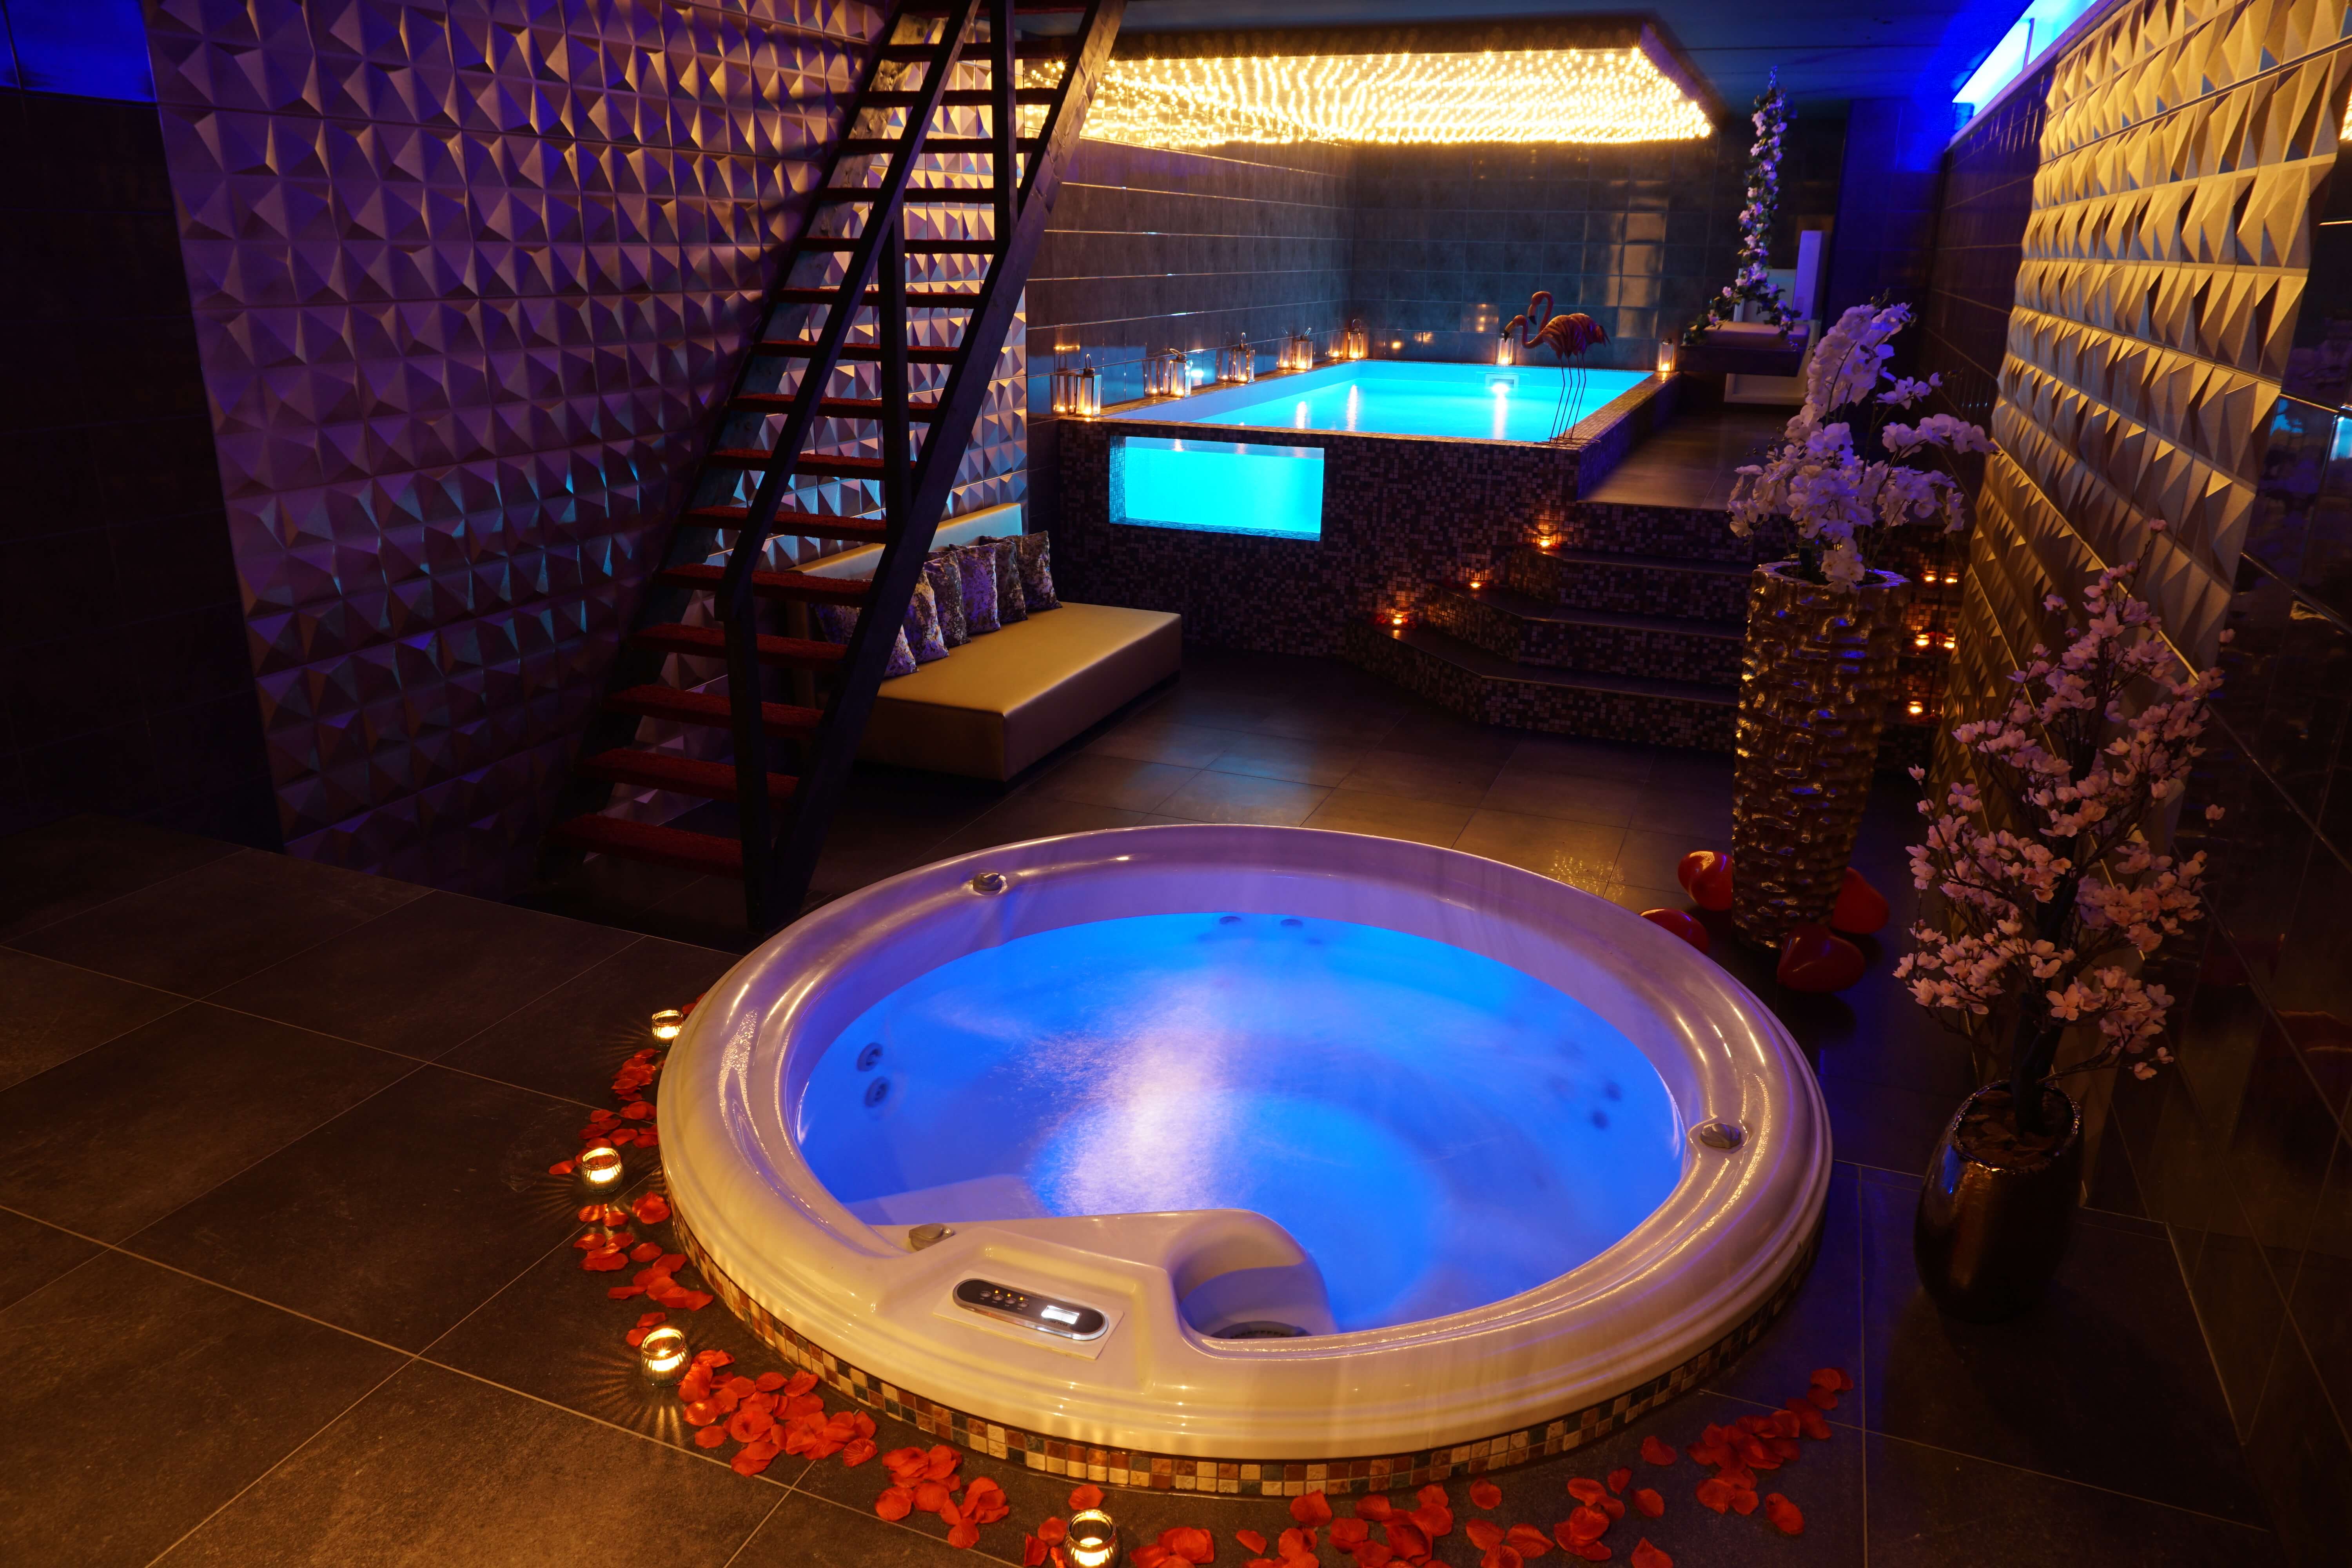 lawaai zal ik doen pk V.I.P. SPA - Luxe privé sauna met zwembad in Zuid-Holland